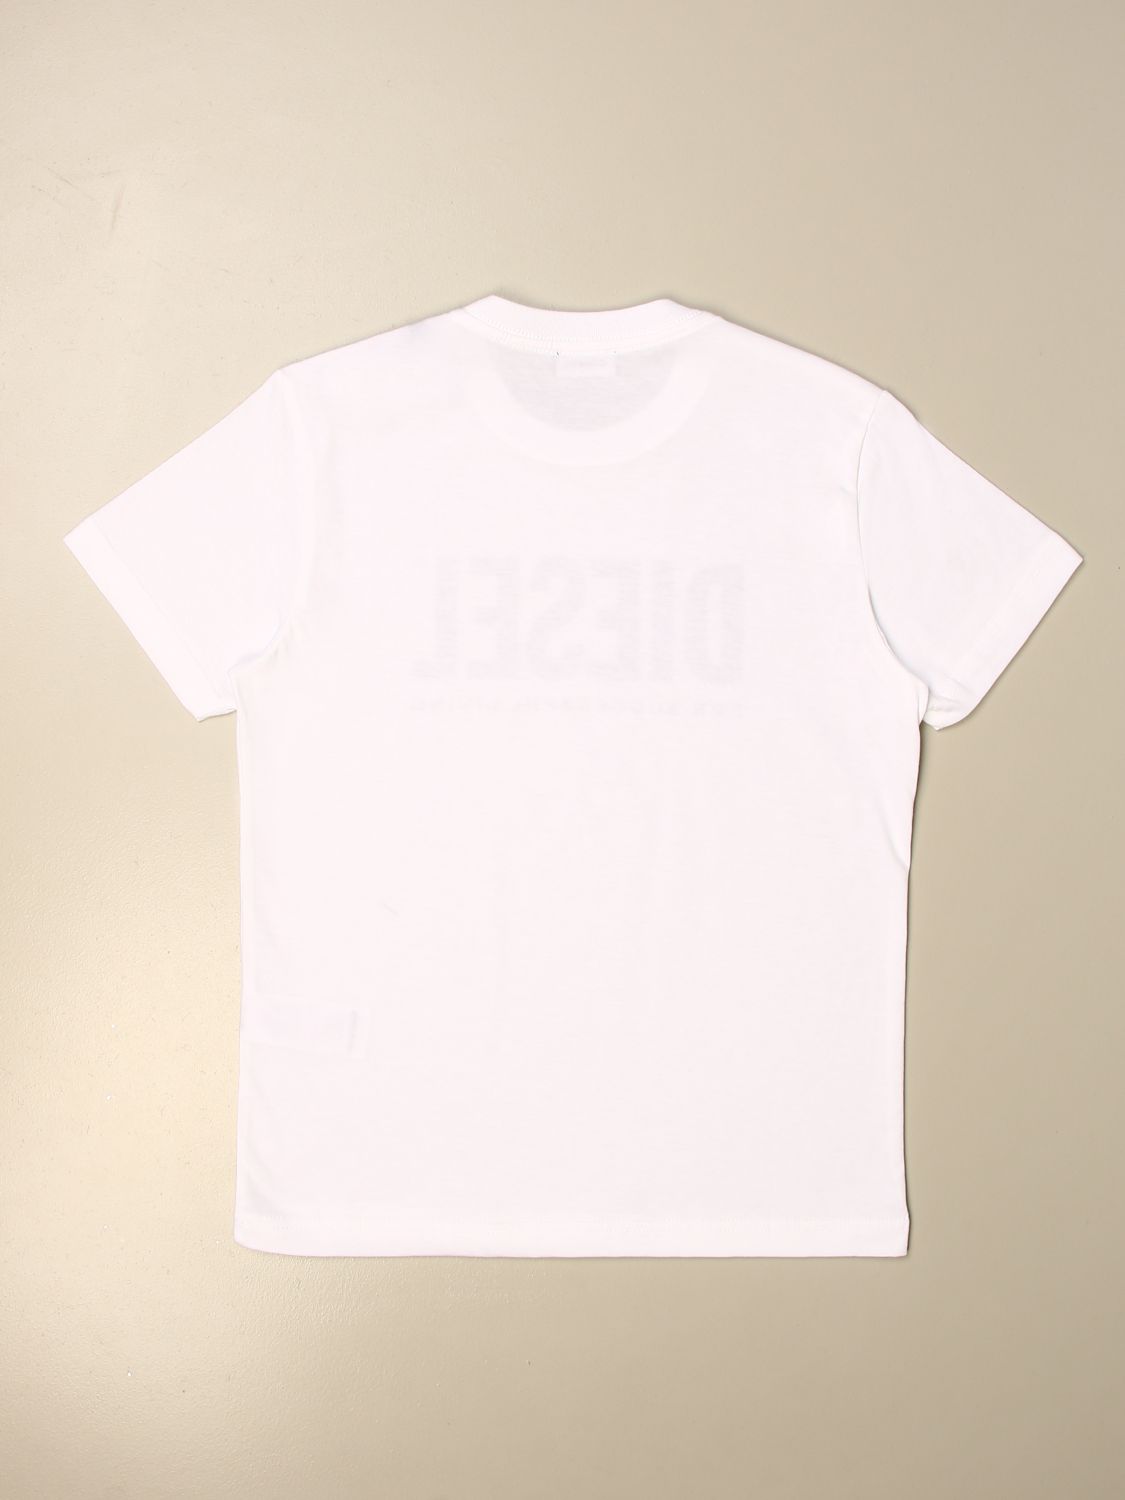 Camiseta Diesel: Camiseta niños Diesel blanco 2